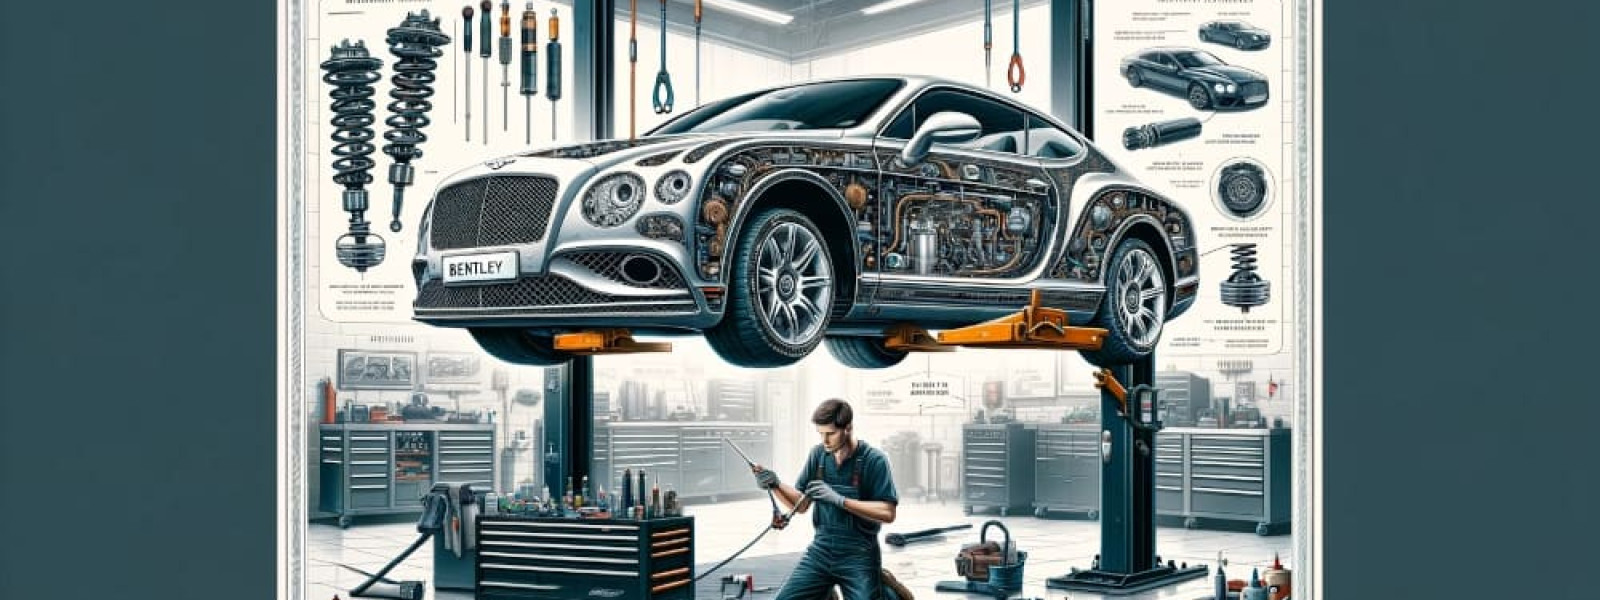 Bentley suspension system